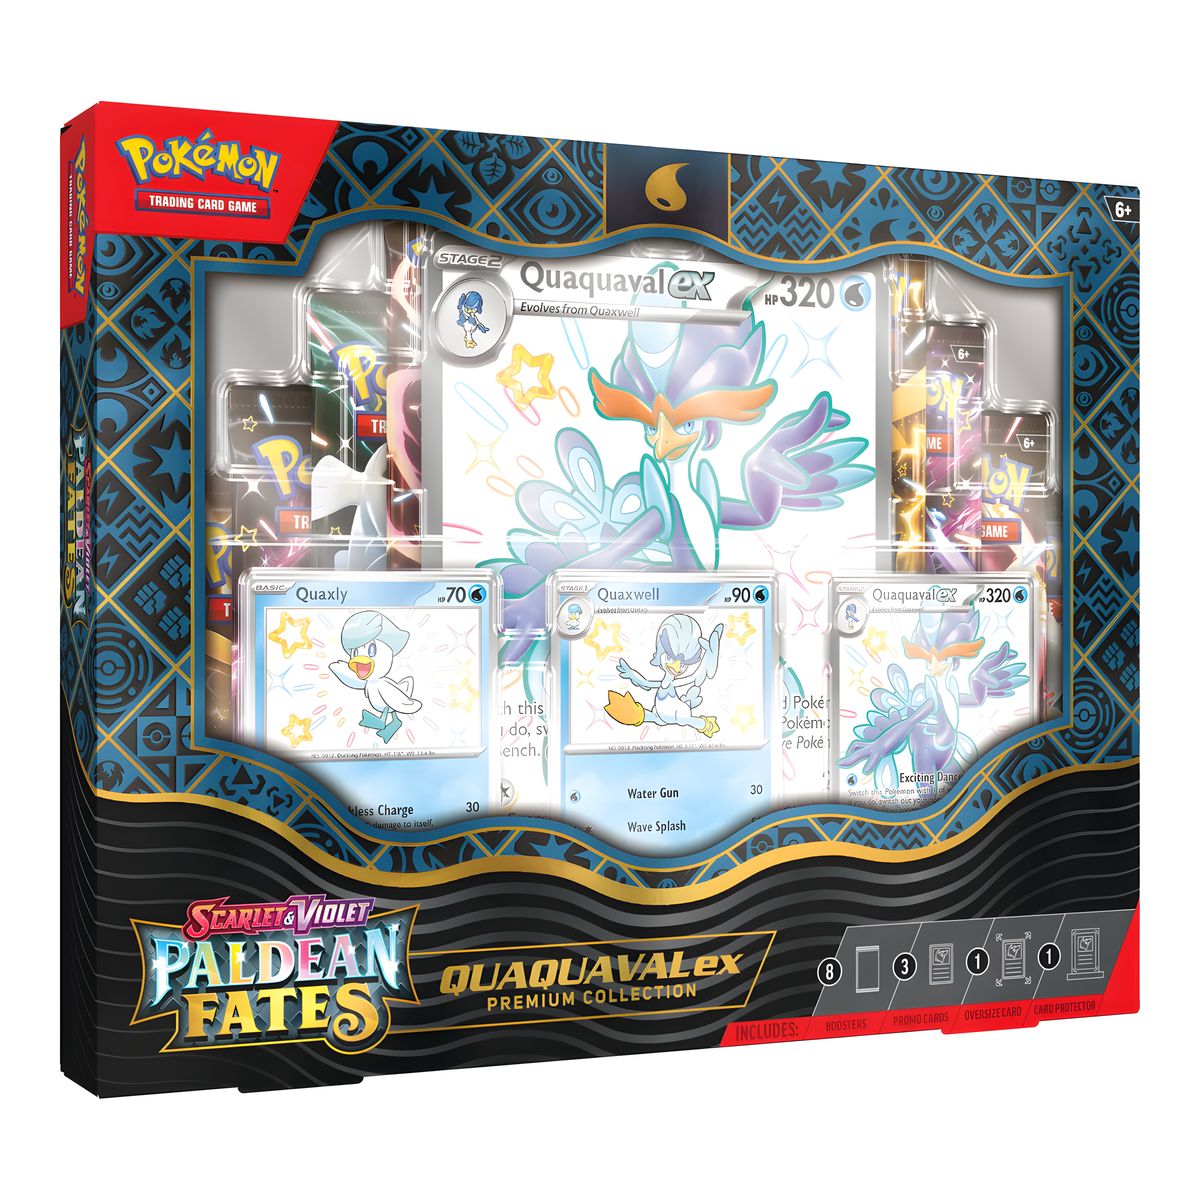 Pokémon - Paldean Fates Premium Collection - Quaquaval